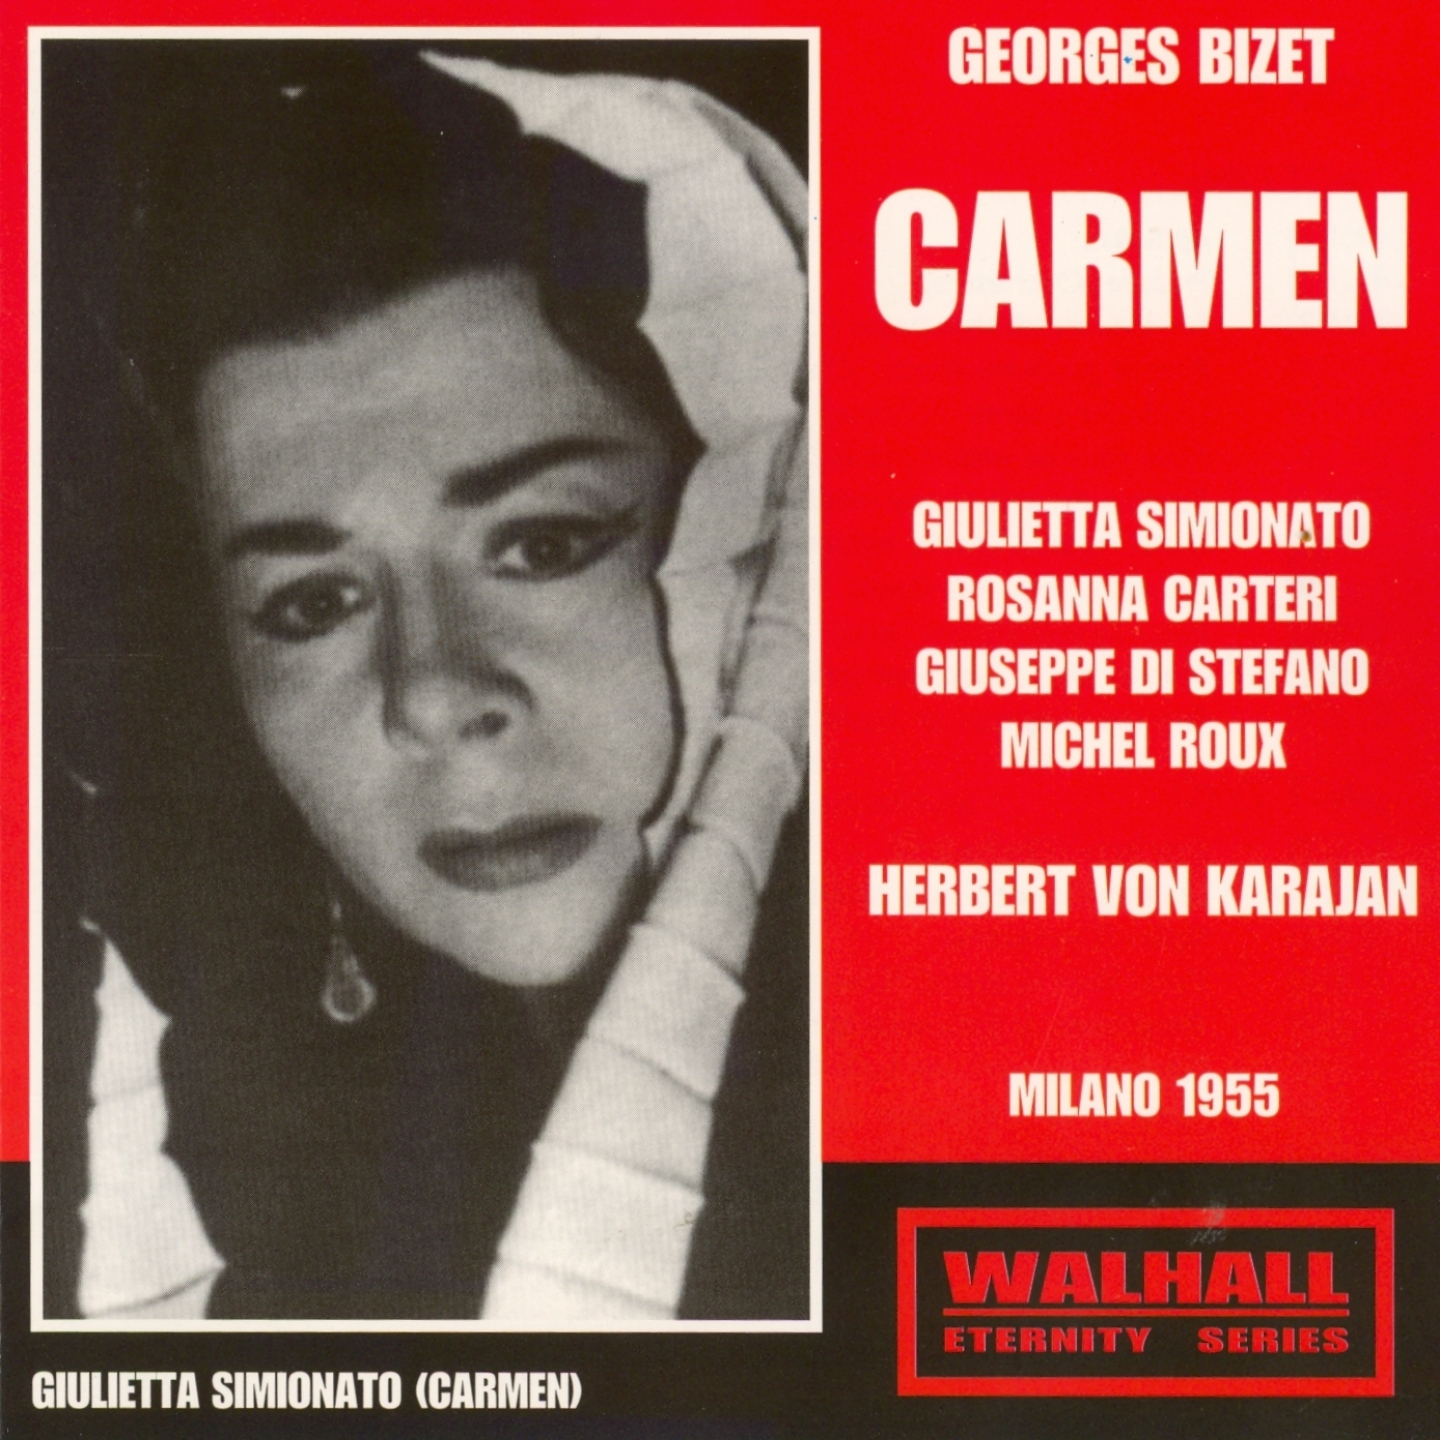 Carmen, Act I : Pre lude